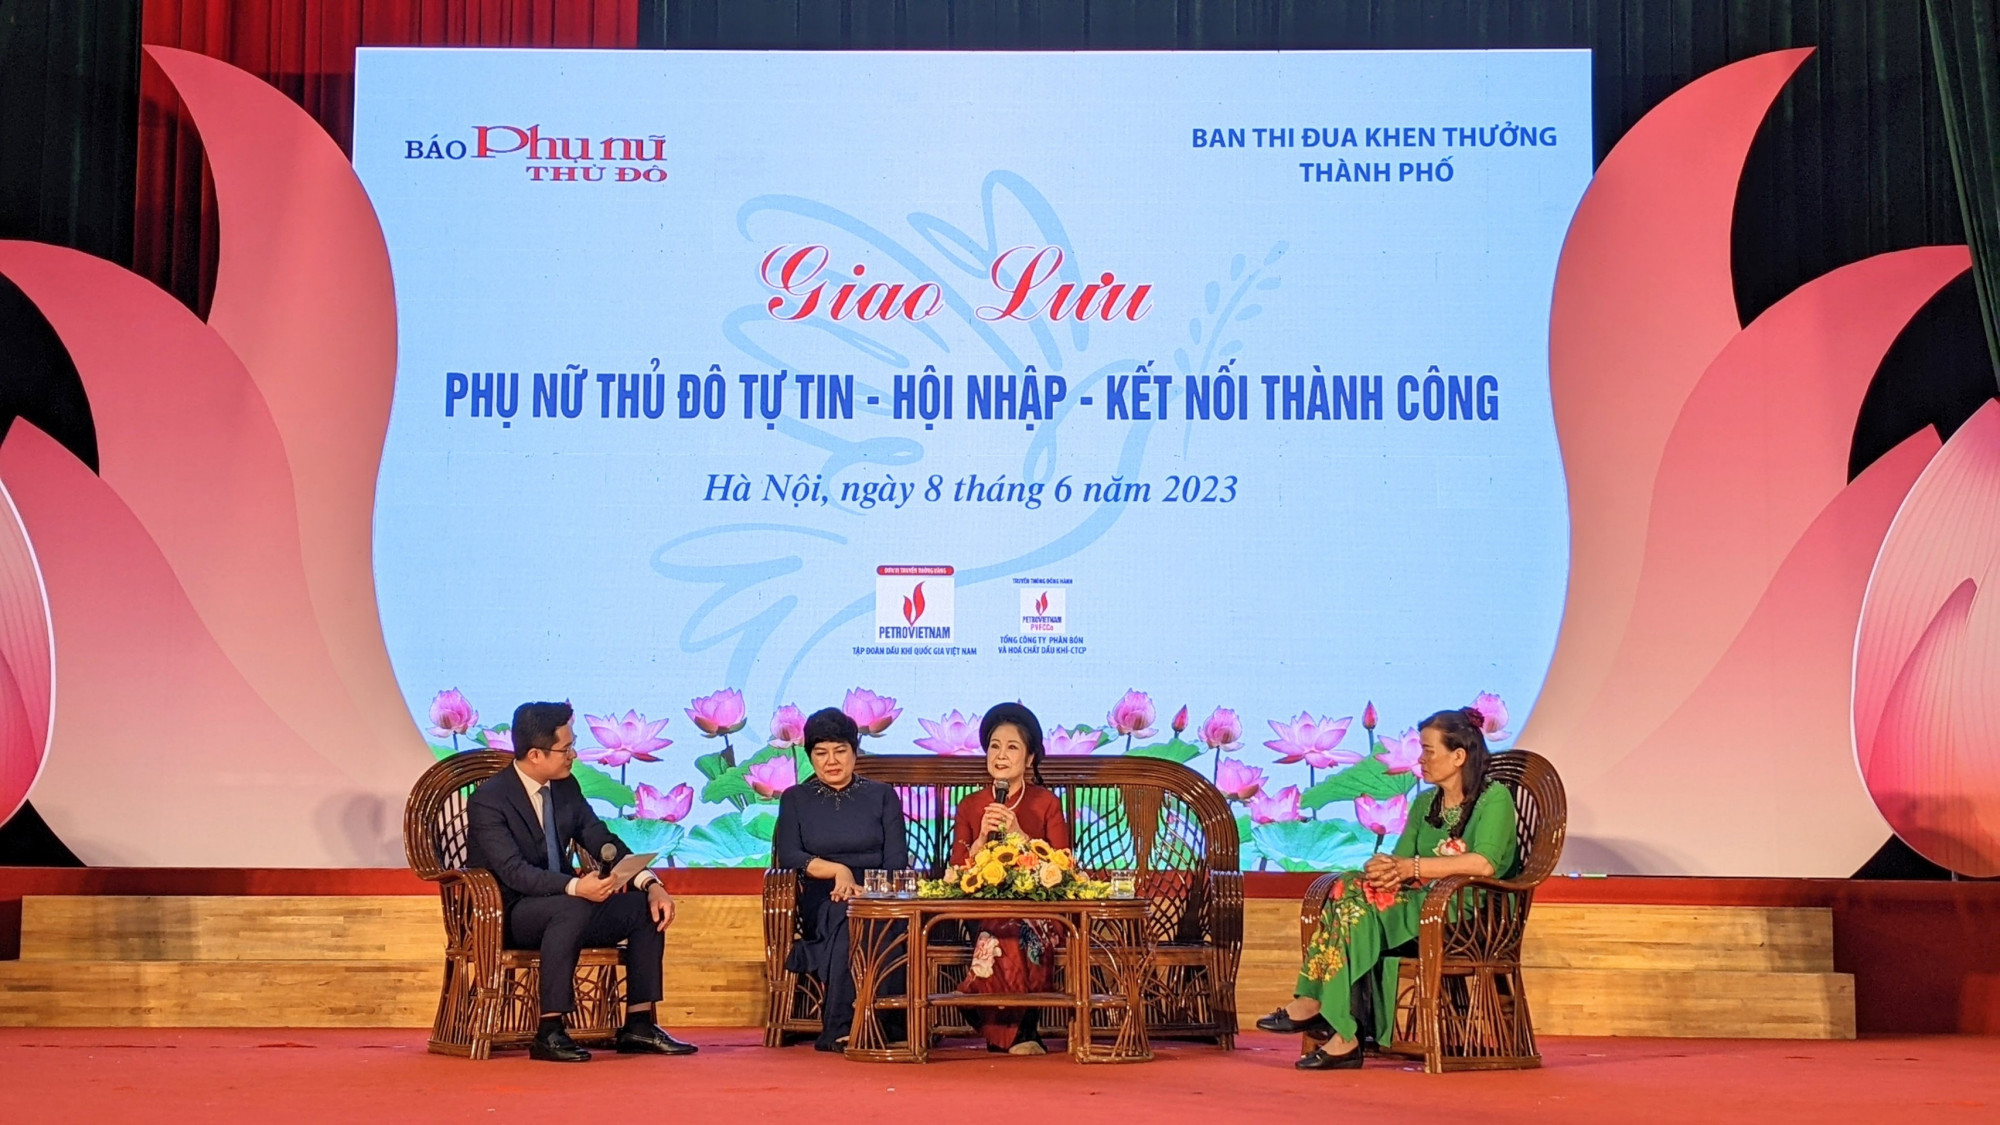 Nghệ nhân Phan Thị Kim Dung (giữa, cầm mic) trong chương trình giao lưu của hội nghị